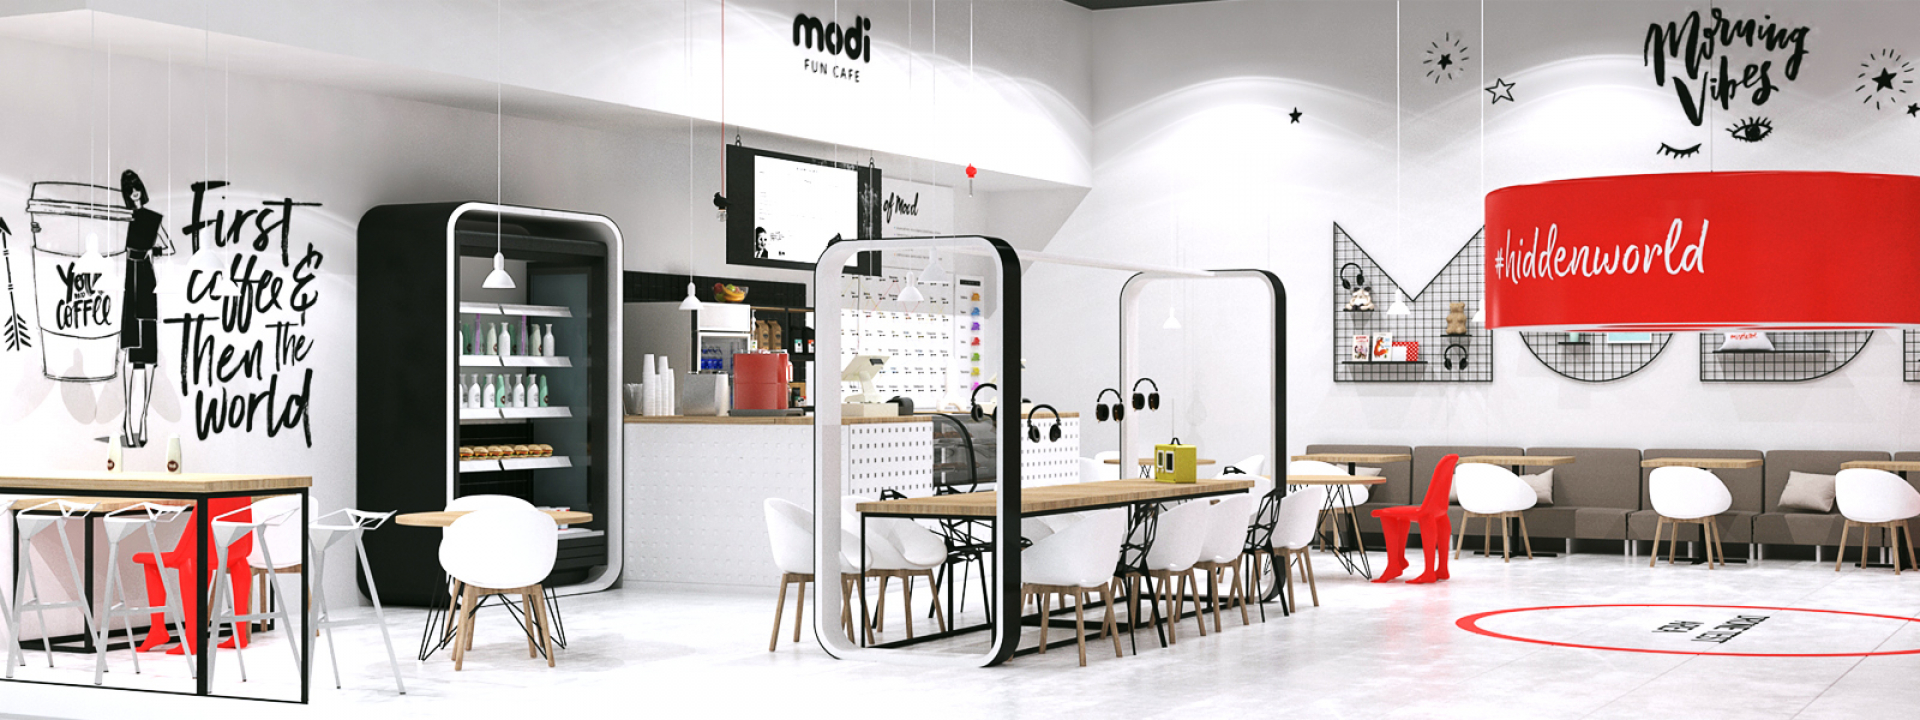 Дизайн интерьера магазина MODI